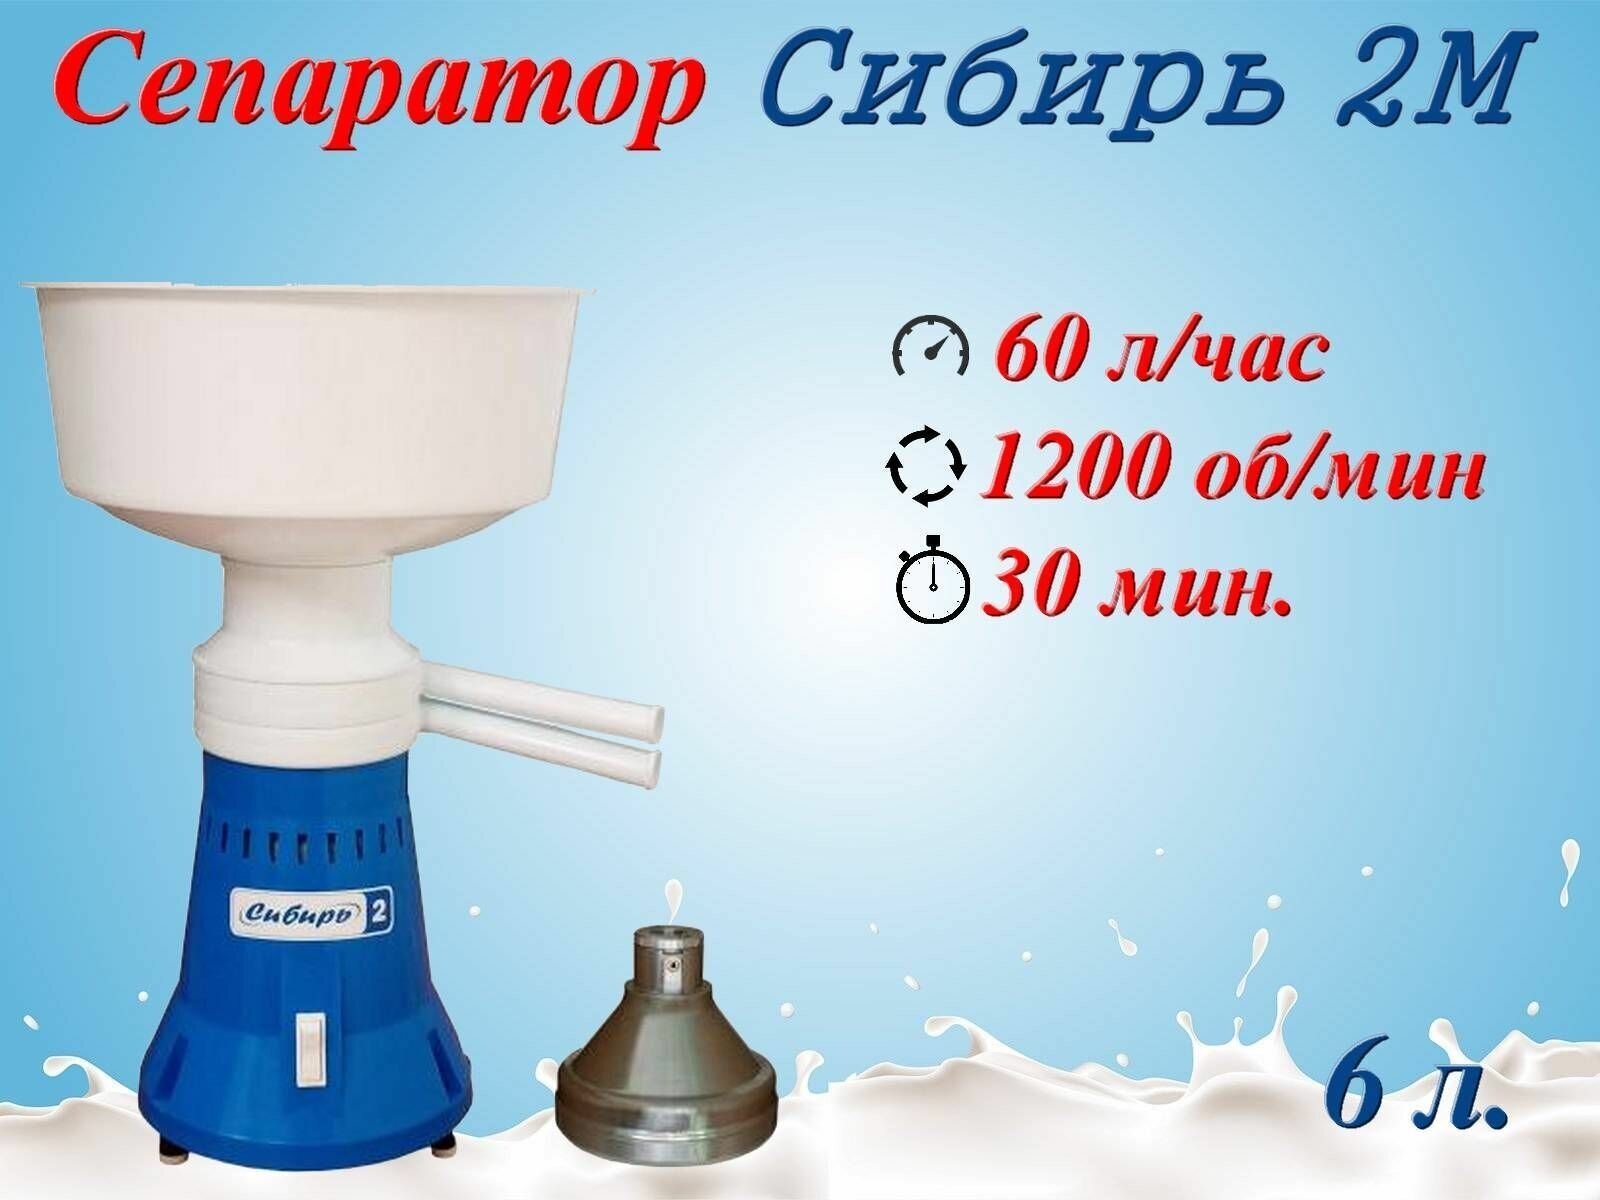 Сепаратор для молока электрический Сибирь-2М 60 л/ч 12 000 об/мин Металлический барабан